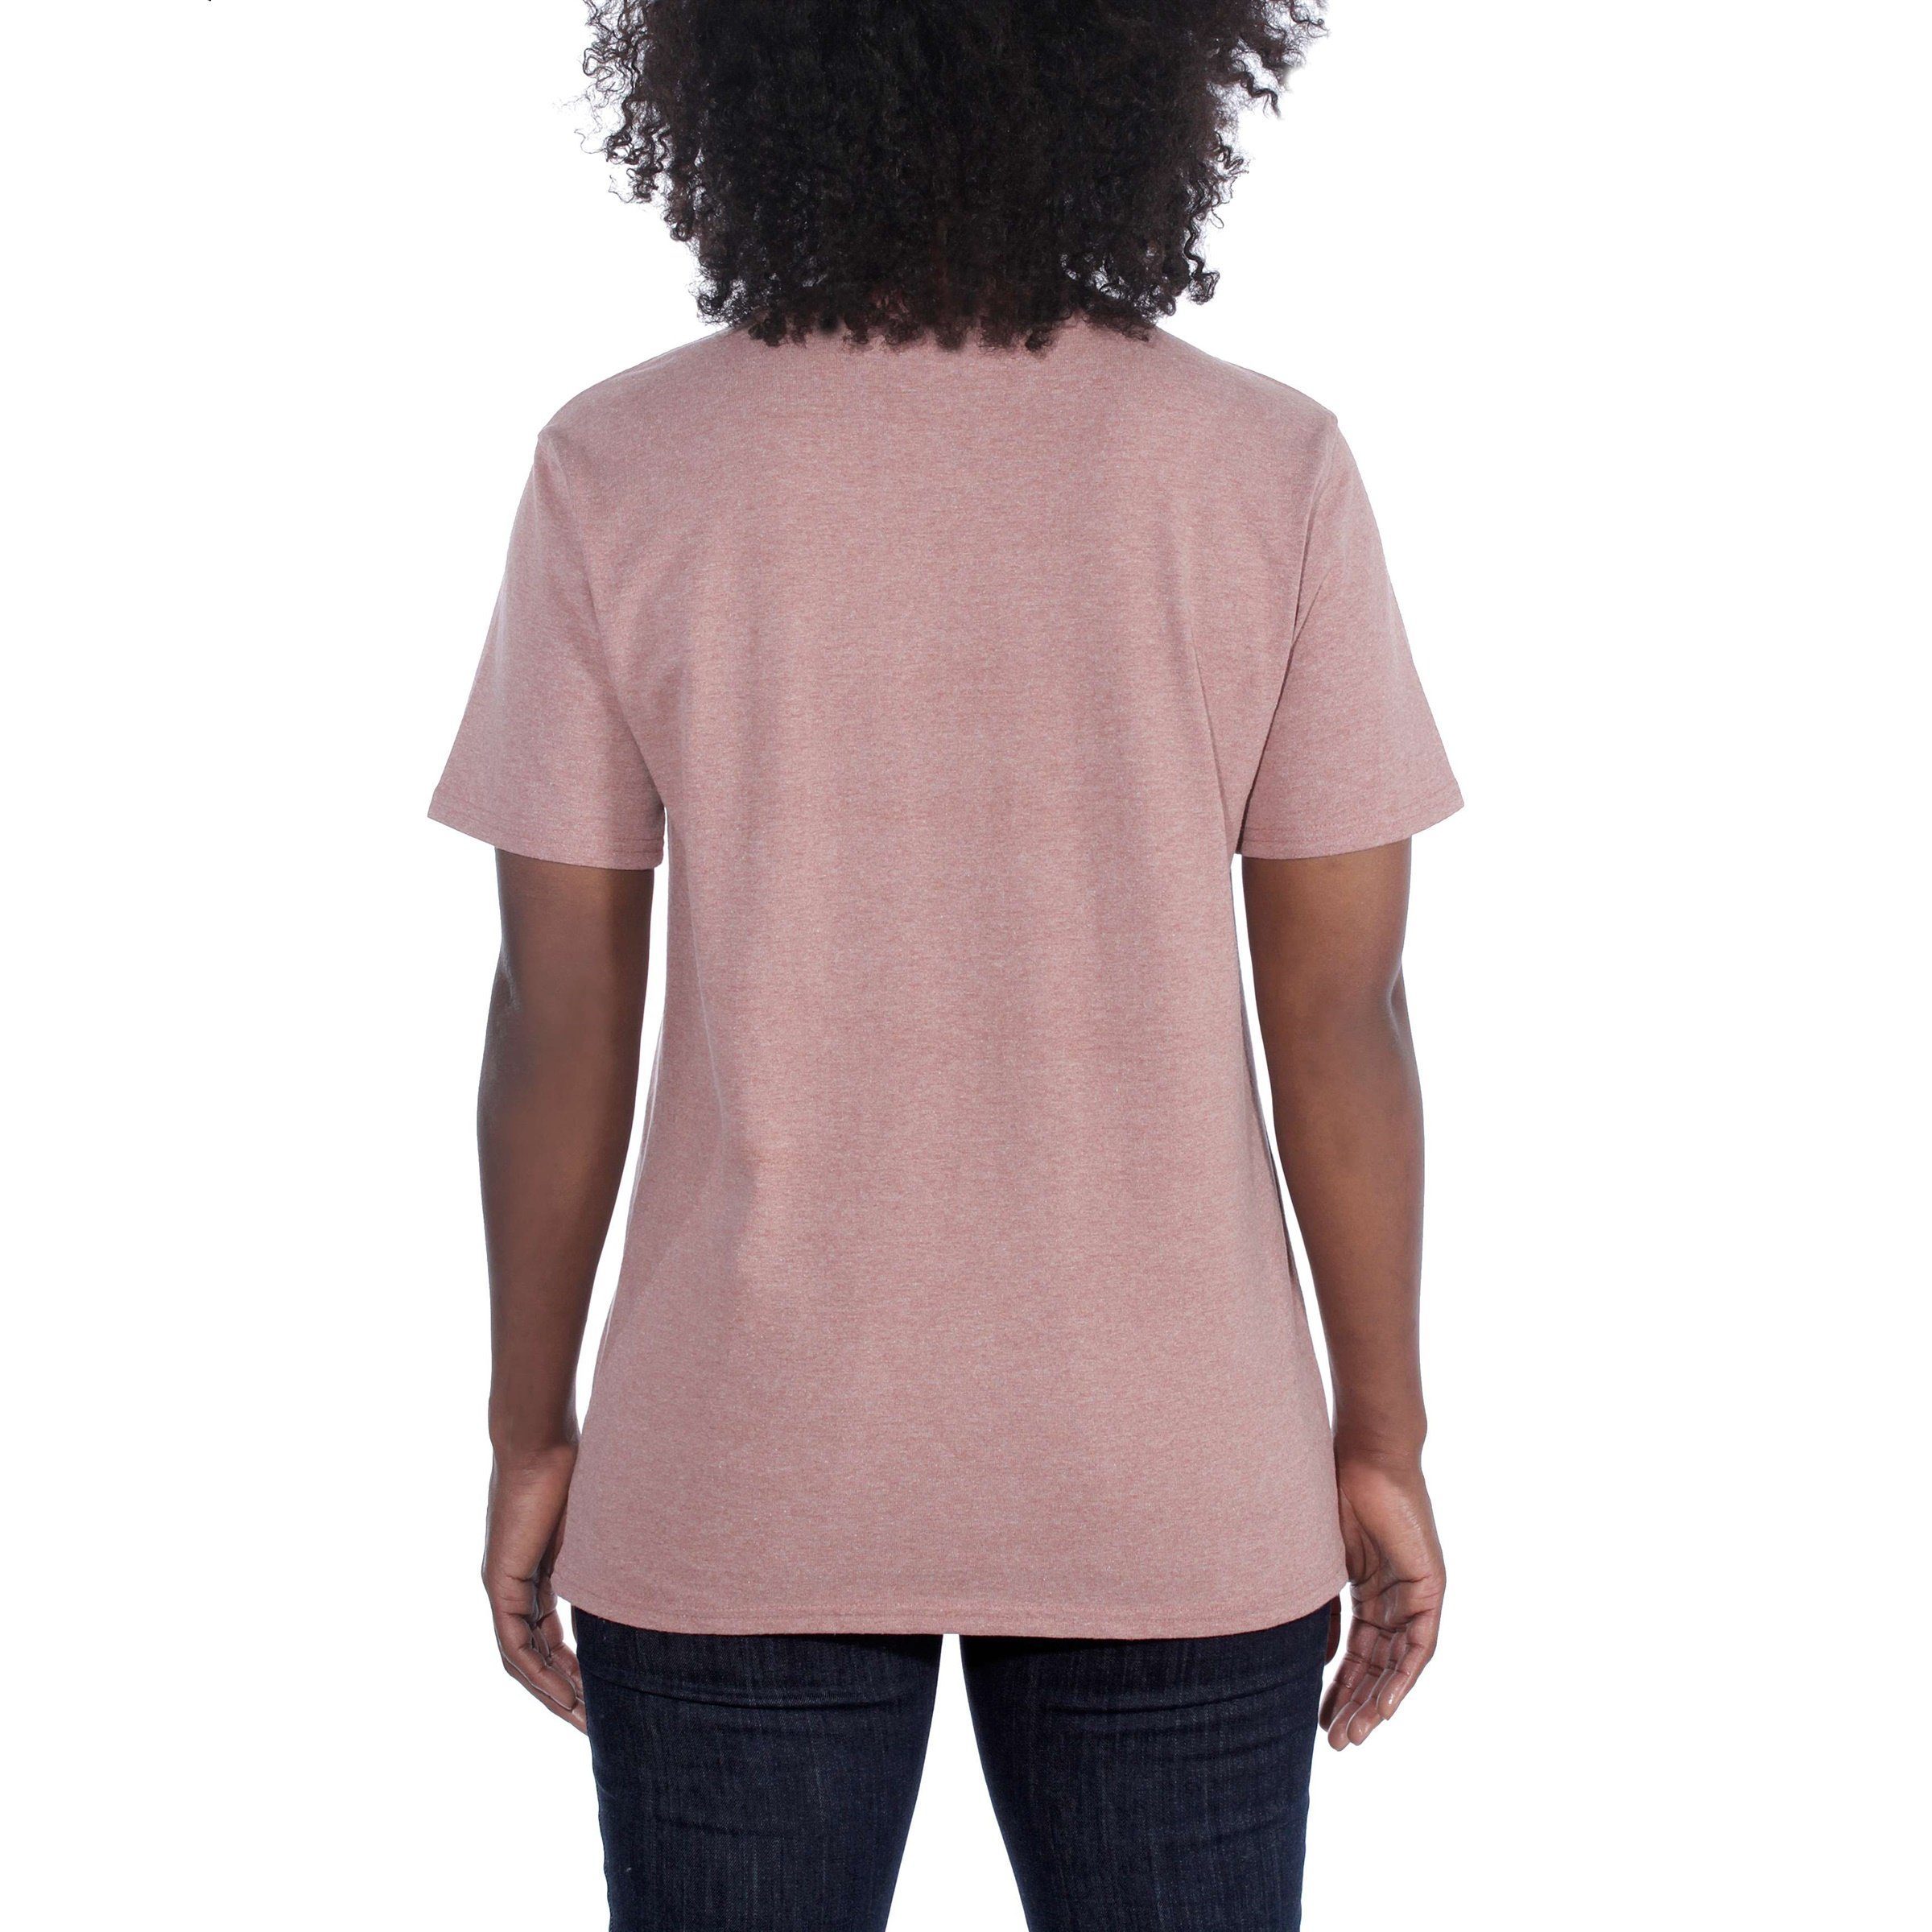 Pocket Short-Sleeve Carhartt T-Shirt Carhartt heather Heavyweight Fit jade Loose Damen Adult T-Shirt